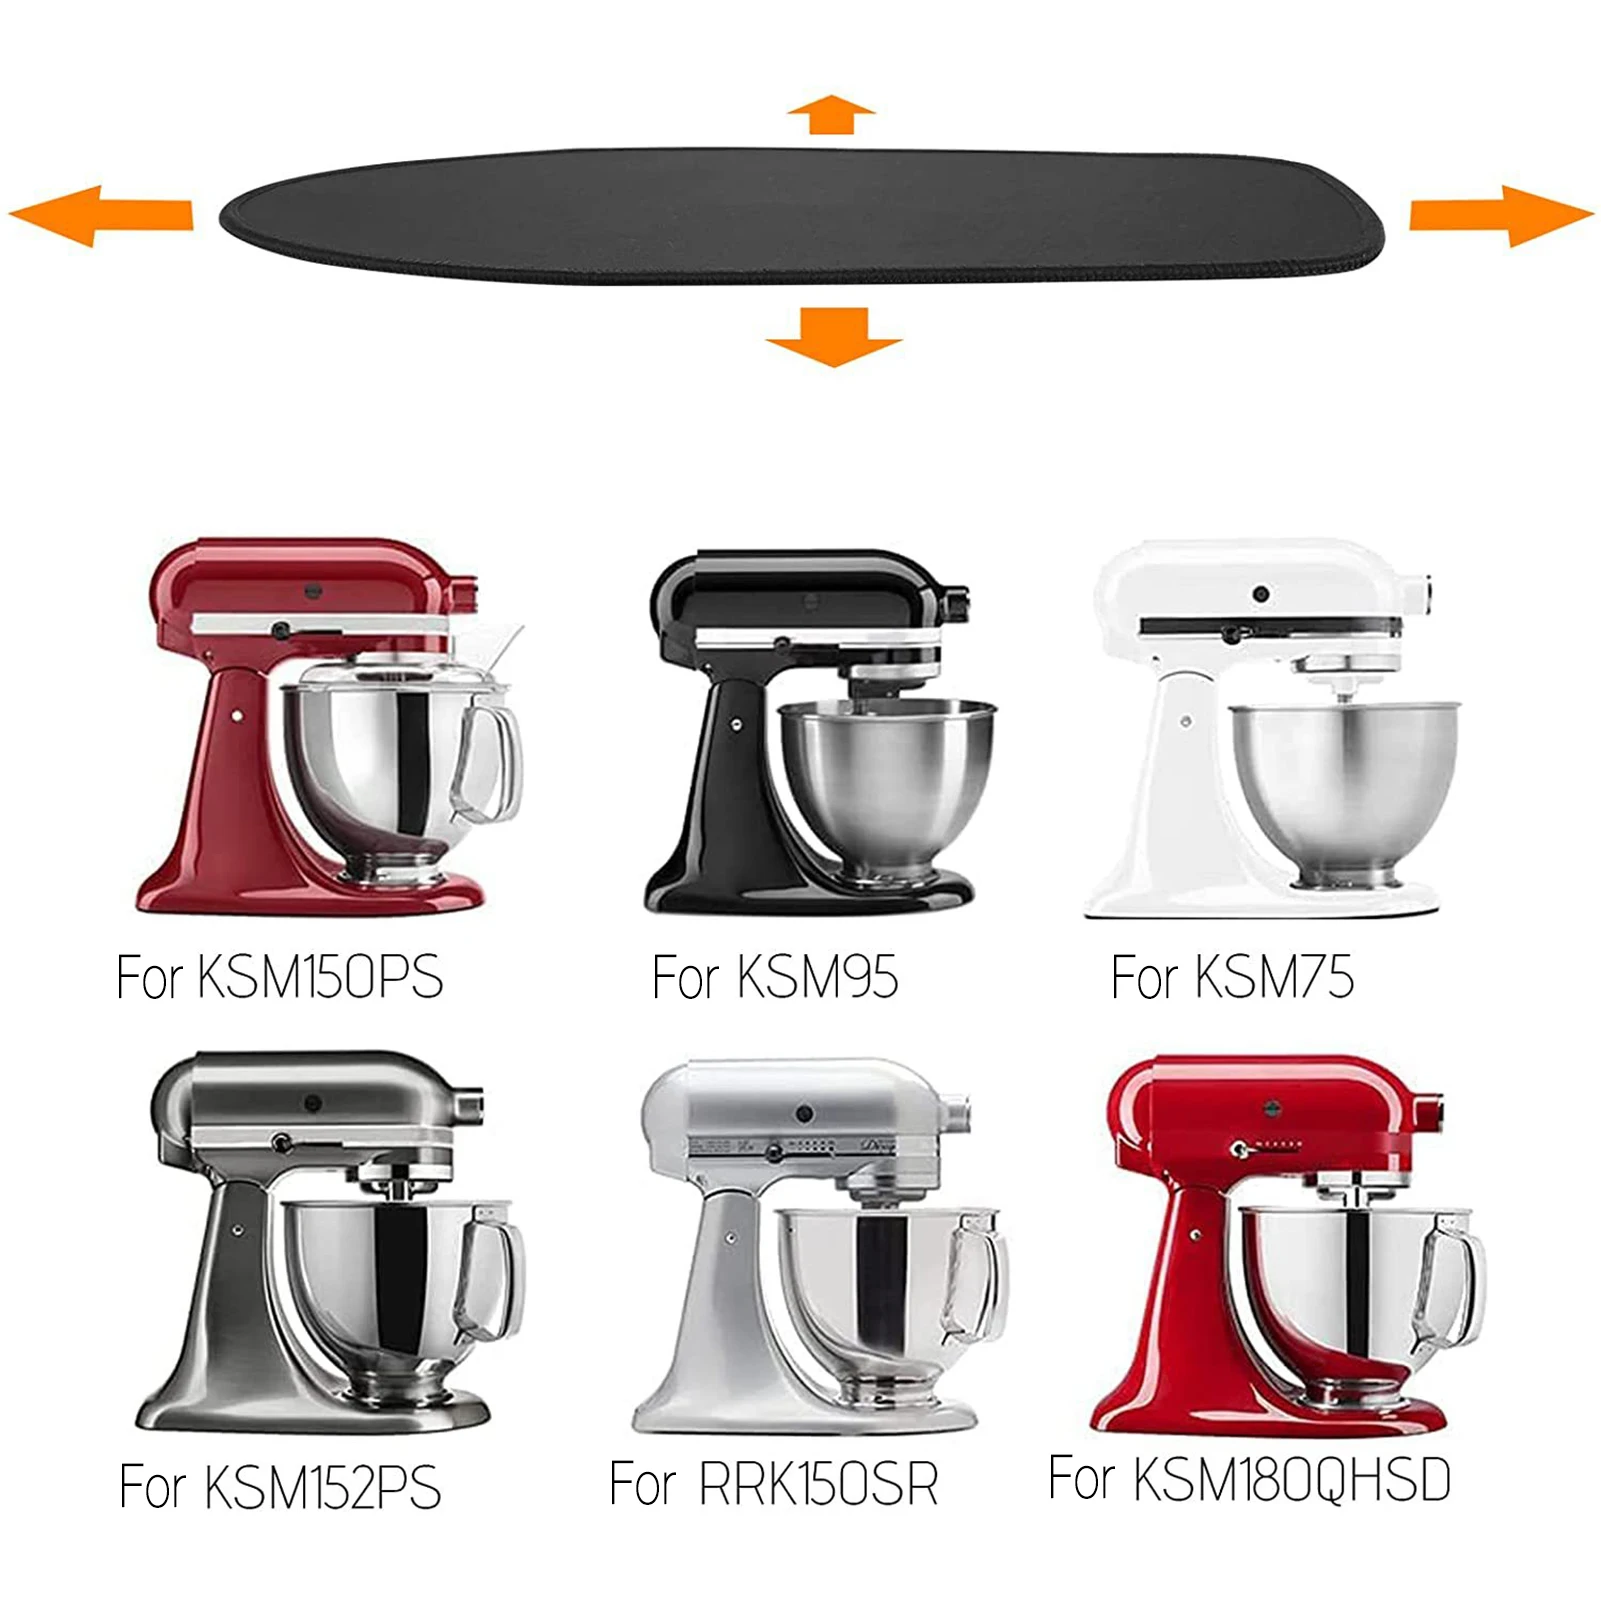 https://ae01.alicdn.com/kf/S966c6144f7334d39874d373ef278d813Q/Mixer-Sliding-Mat-Appliance-Slider-Mixer-Mover-Cooker-Toaster-Coffee-Maker-Mat-Sliding-Appliance-Mats-For.jpg